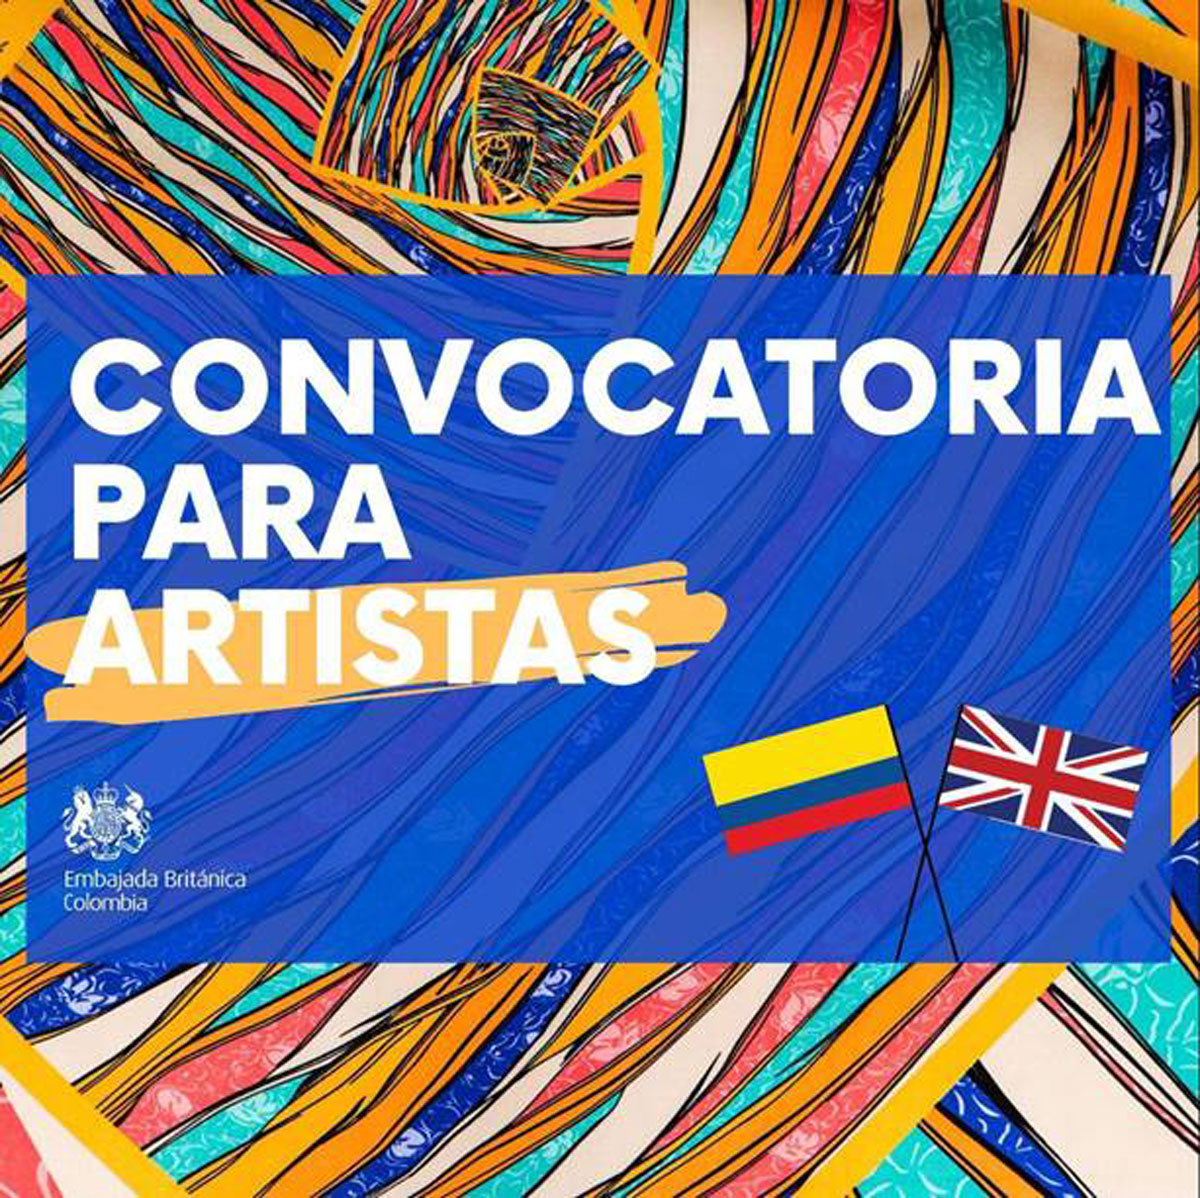 Convocatoria para artistas- Embajada Británica Colombia